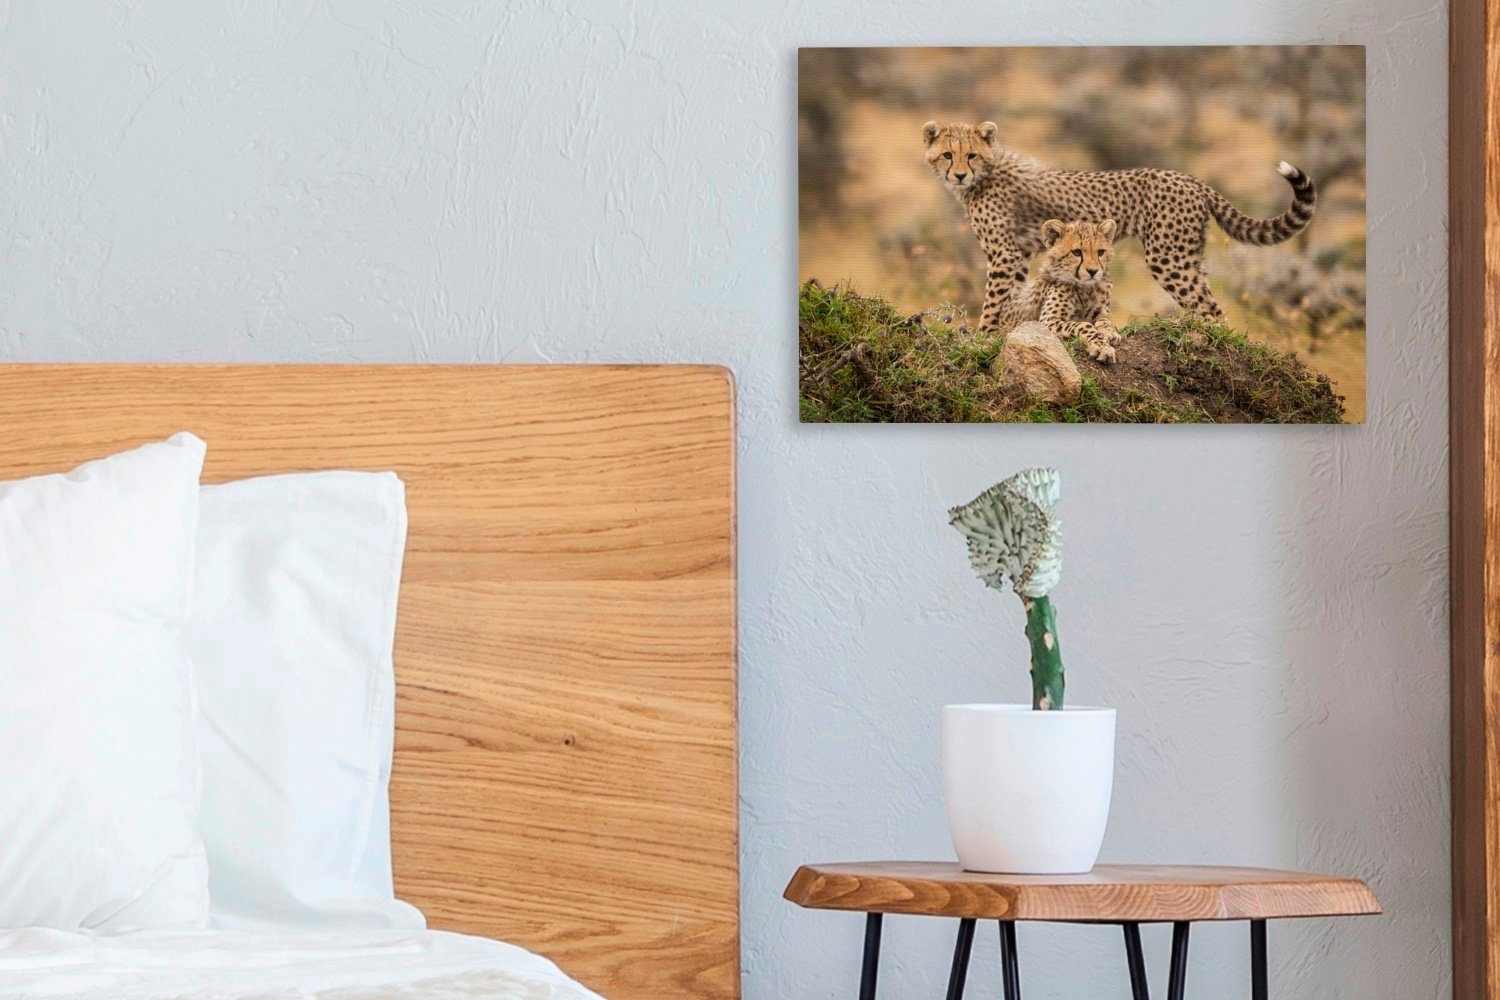 (1 cm - Jungtier St), OneMillionCanvasses® Wanddeko, Aufhängefertig, Leinwandbilder, 30x20 - Leopard Wandbild Leinwandbild Natur,